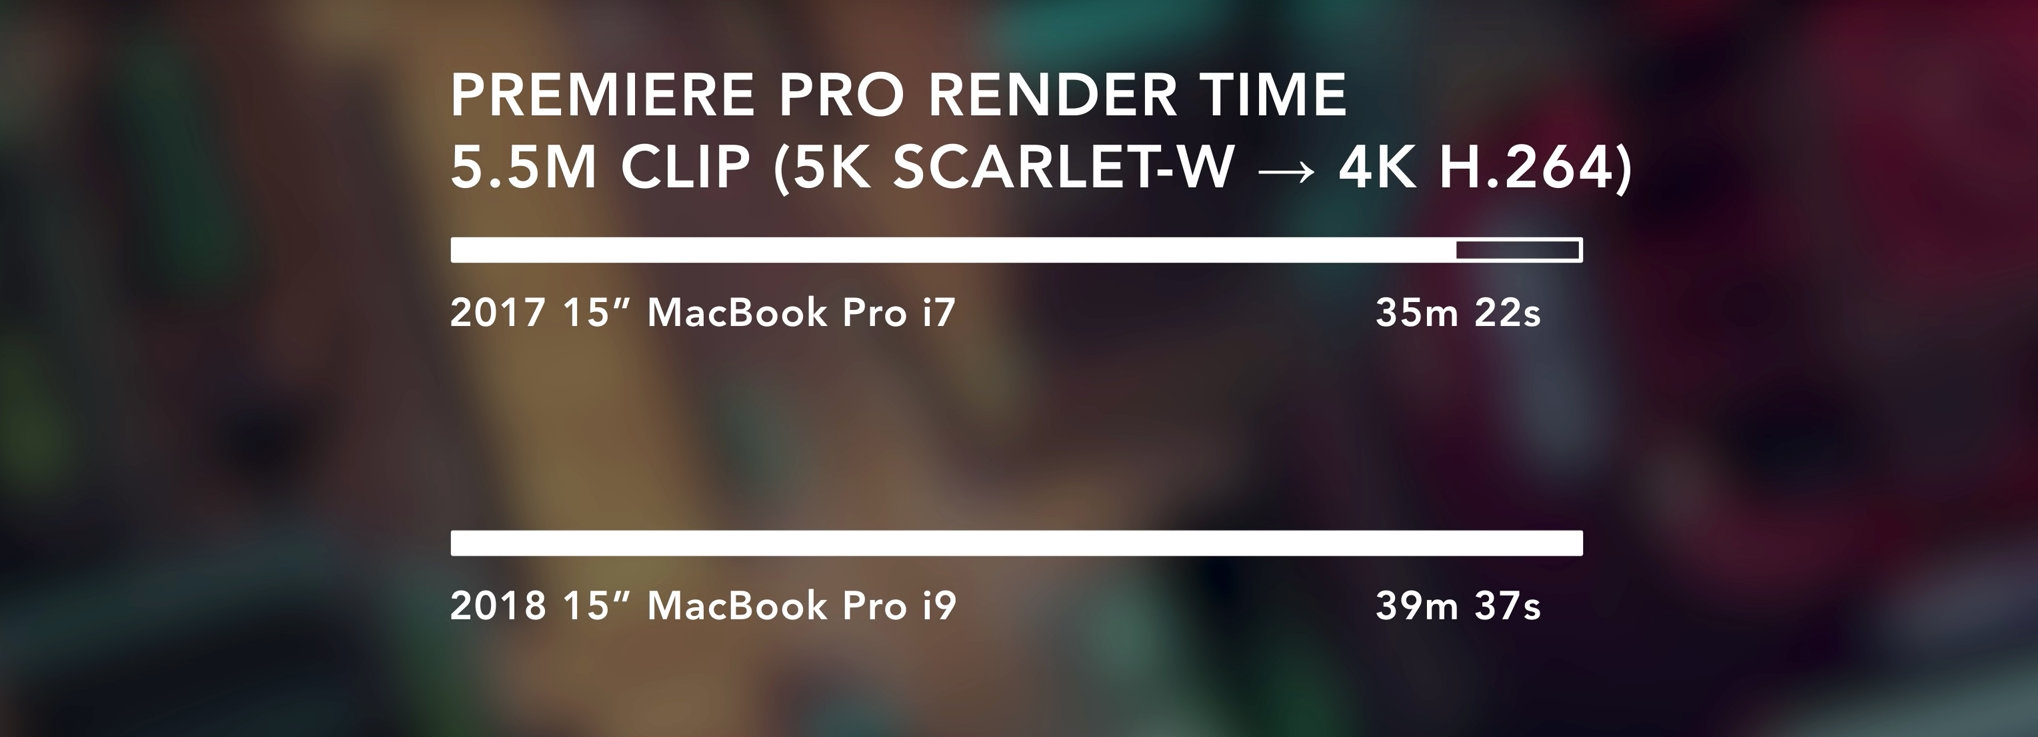 Lee fant at selv forrigegenerasjons MacBook klarte Premiere Pro-oppgaven raskere enn dagens modell